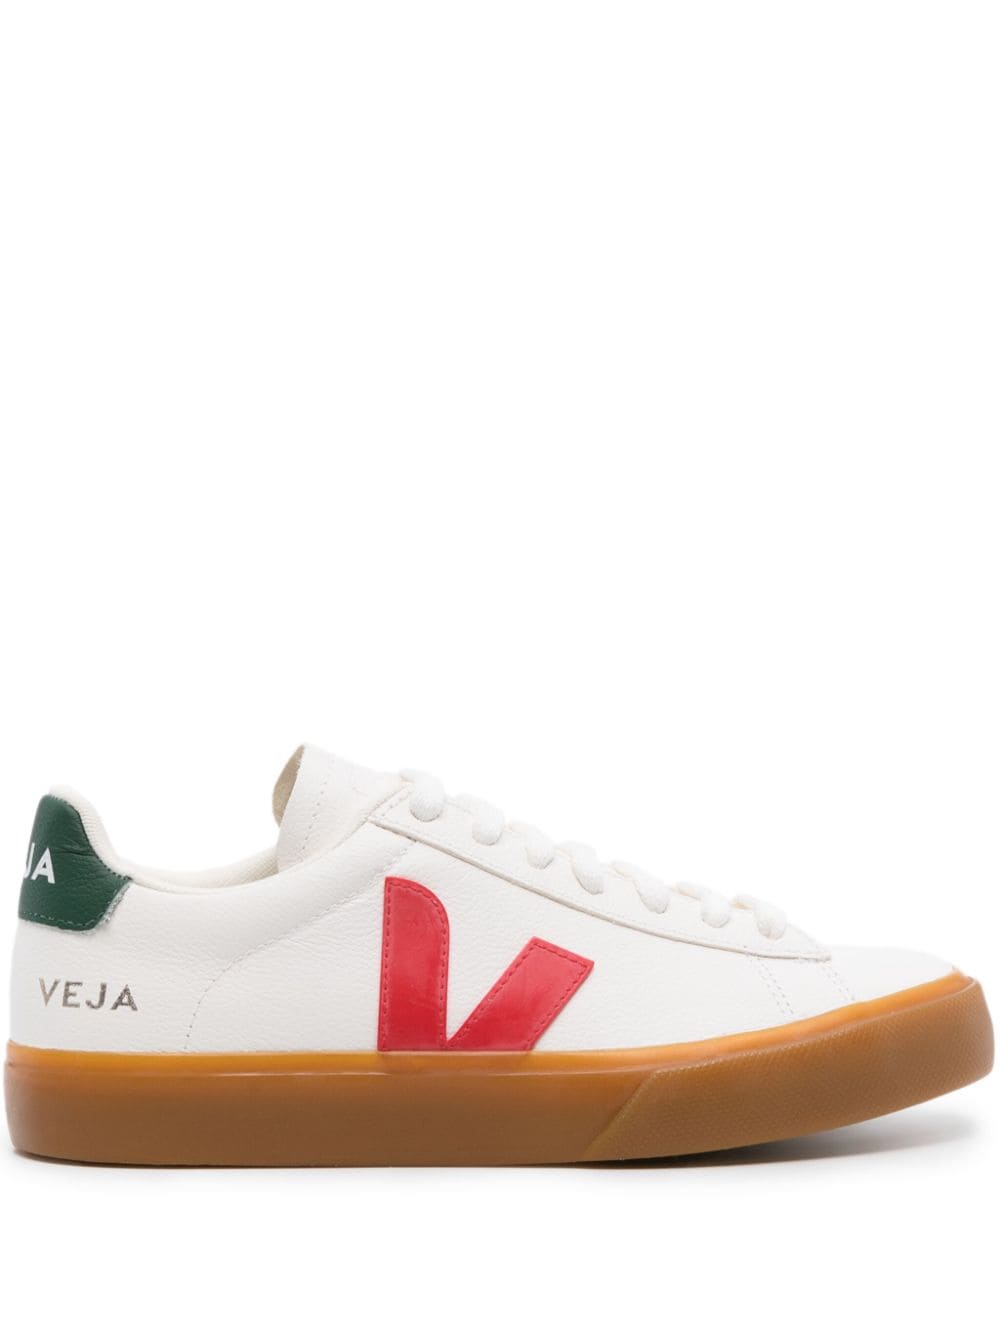 VEJA Campo leather sneakers - White von VEJA